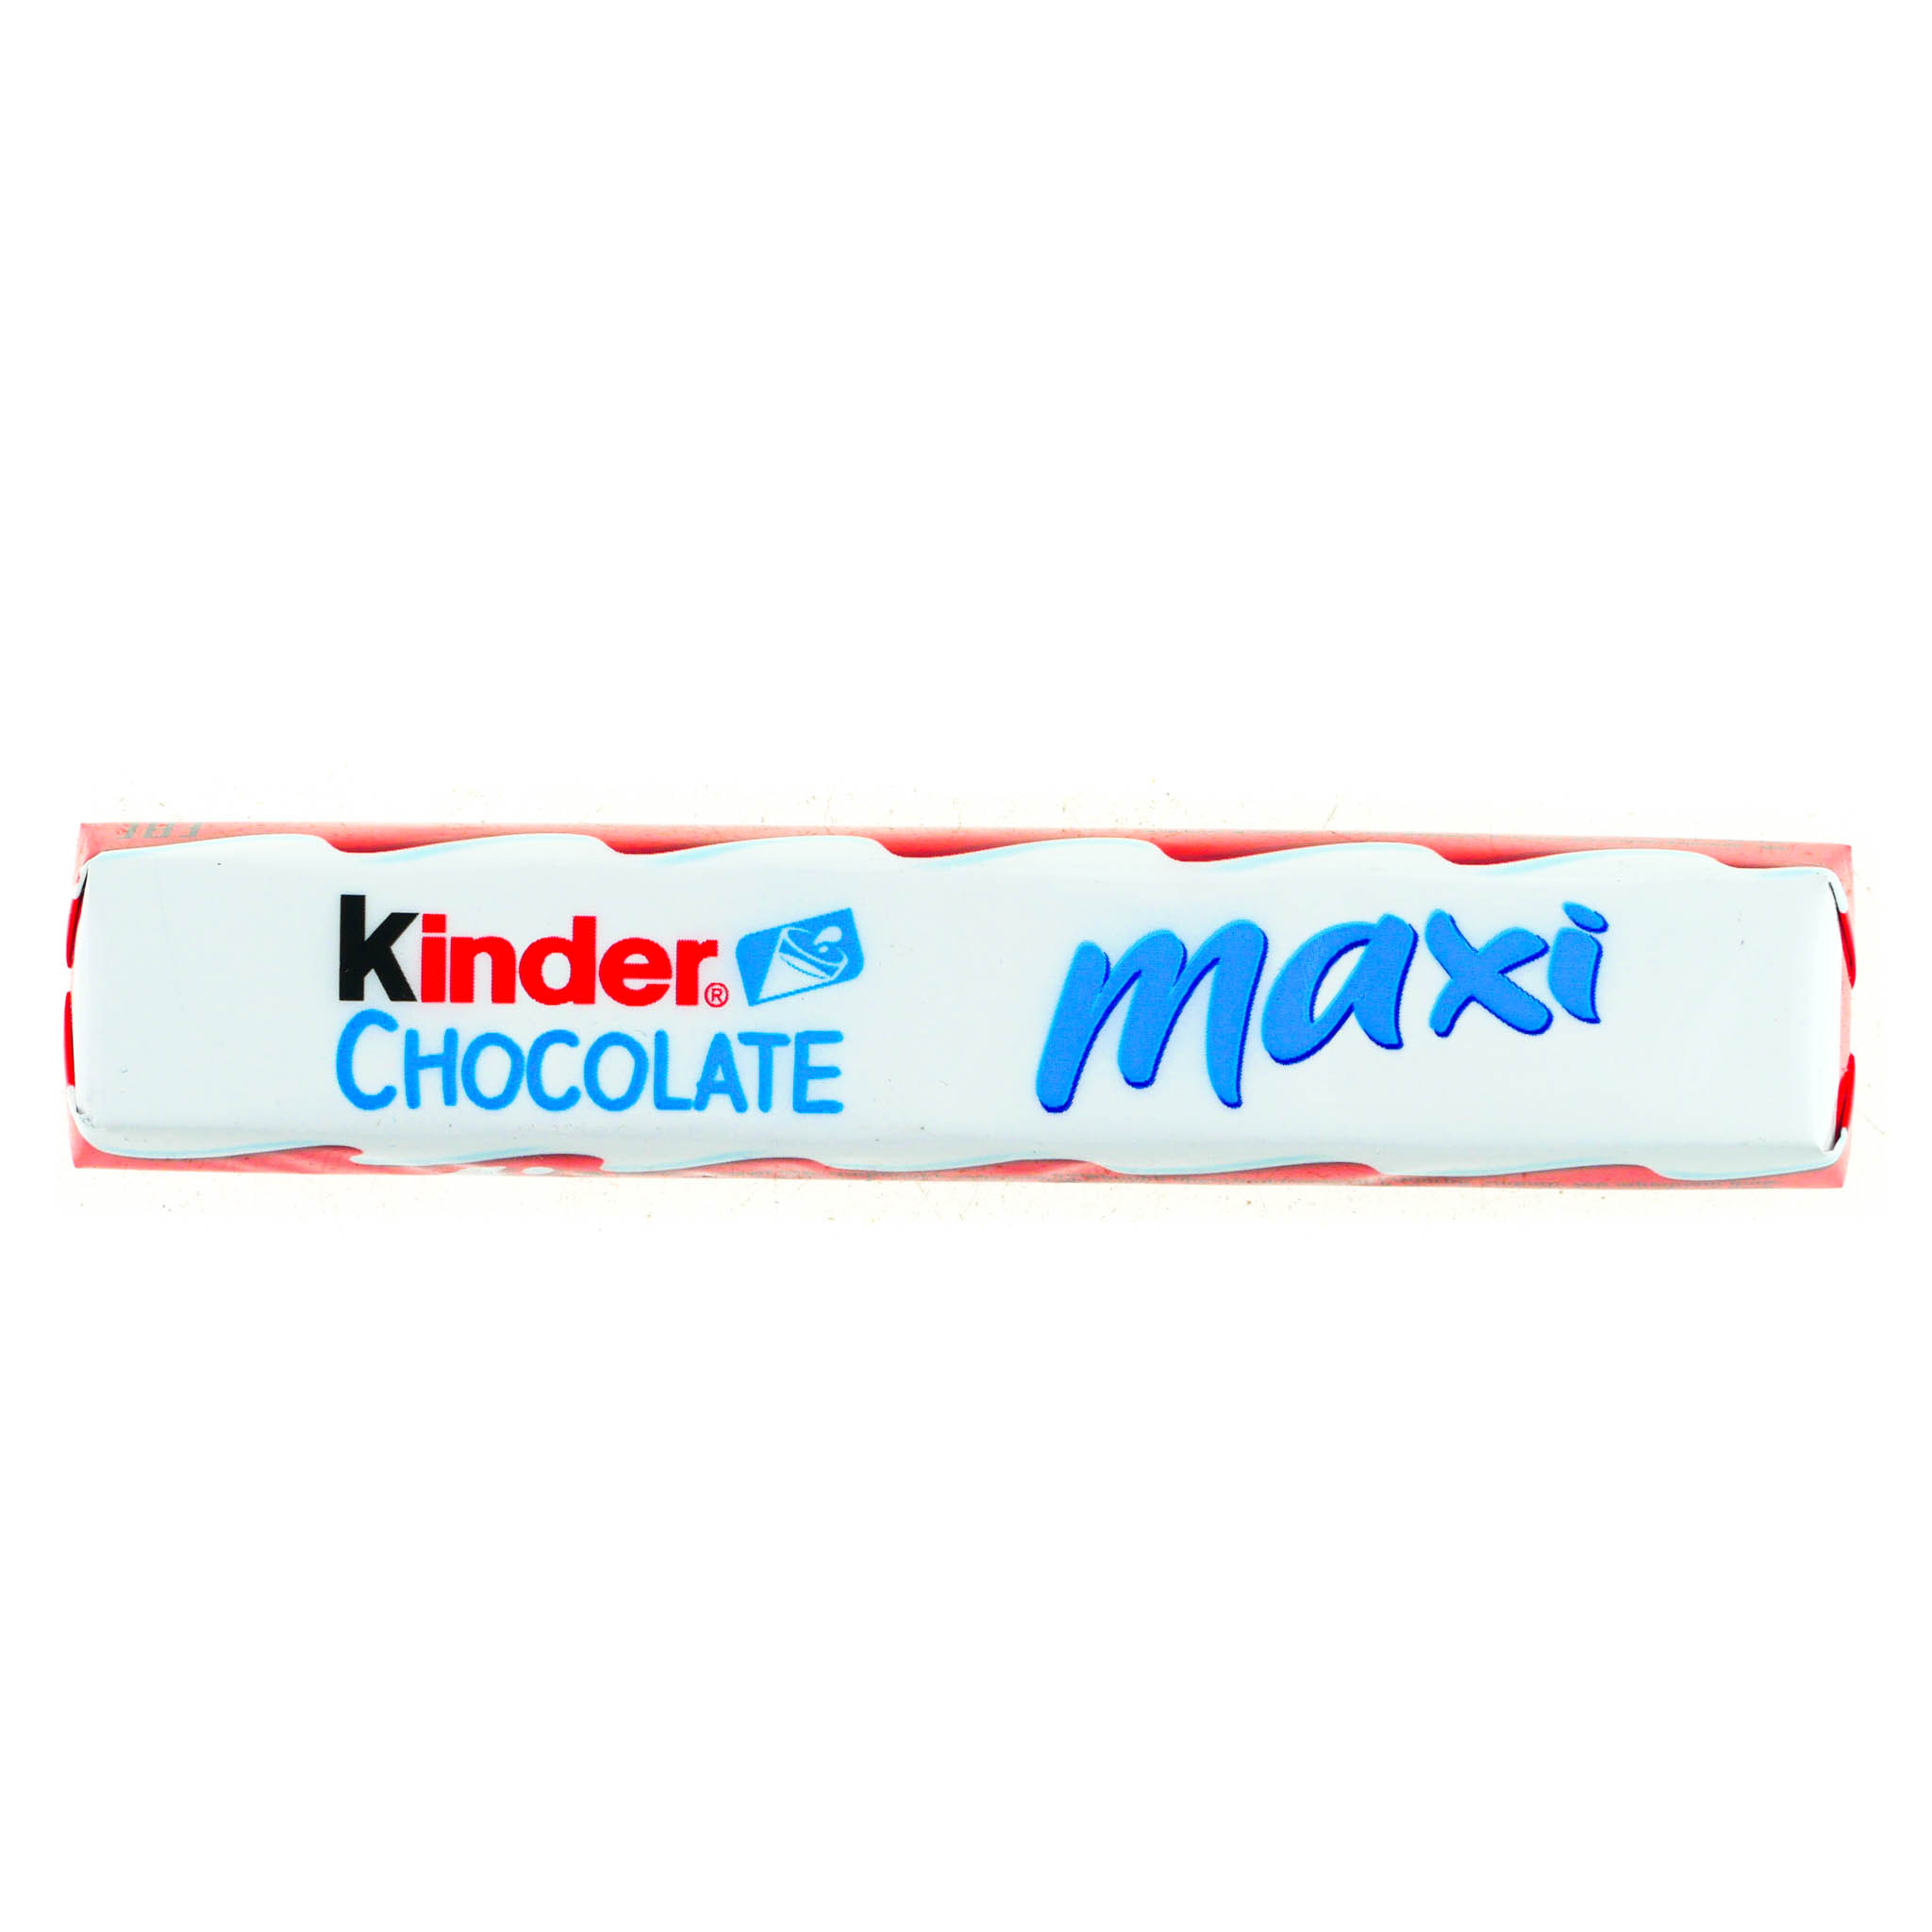 Kind 21. Киндер шоколад макси 21 гр. Шоколад kinder Chocolate Maxi молочный 21 г. ШОК батончик kinder Maxi 21г. Киндер шоколад макси 36*8 21г, шт.